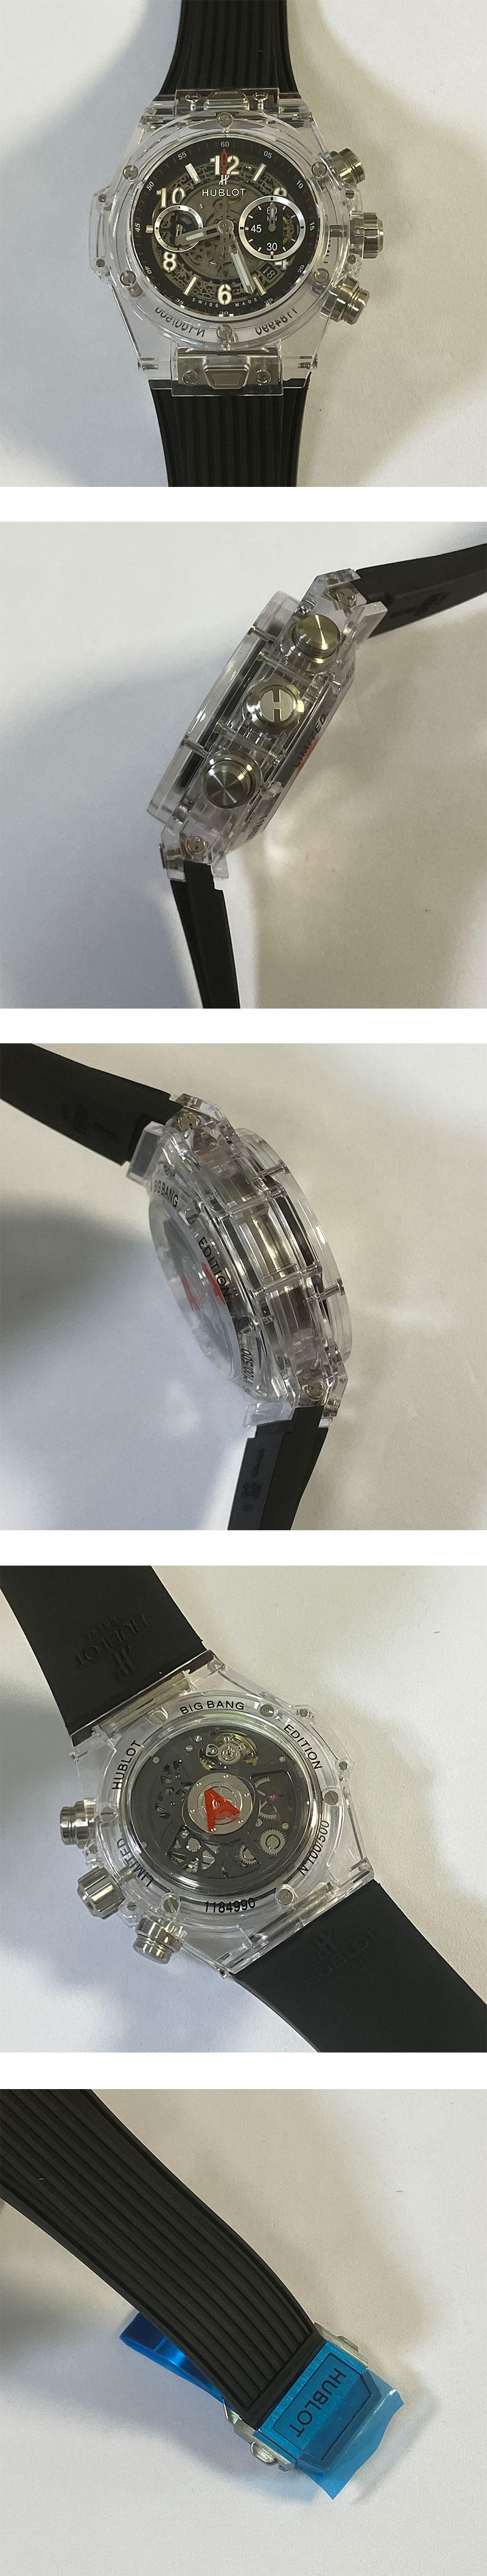 ウブロコピー腕時計専門販売 ビッグバン ウニコ マジックサファイア 411.JX.1170.RX